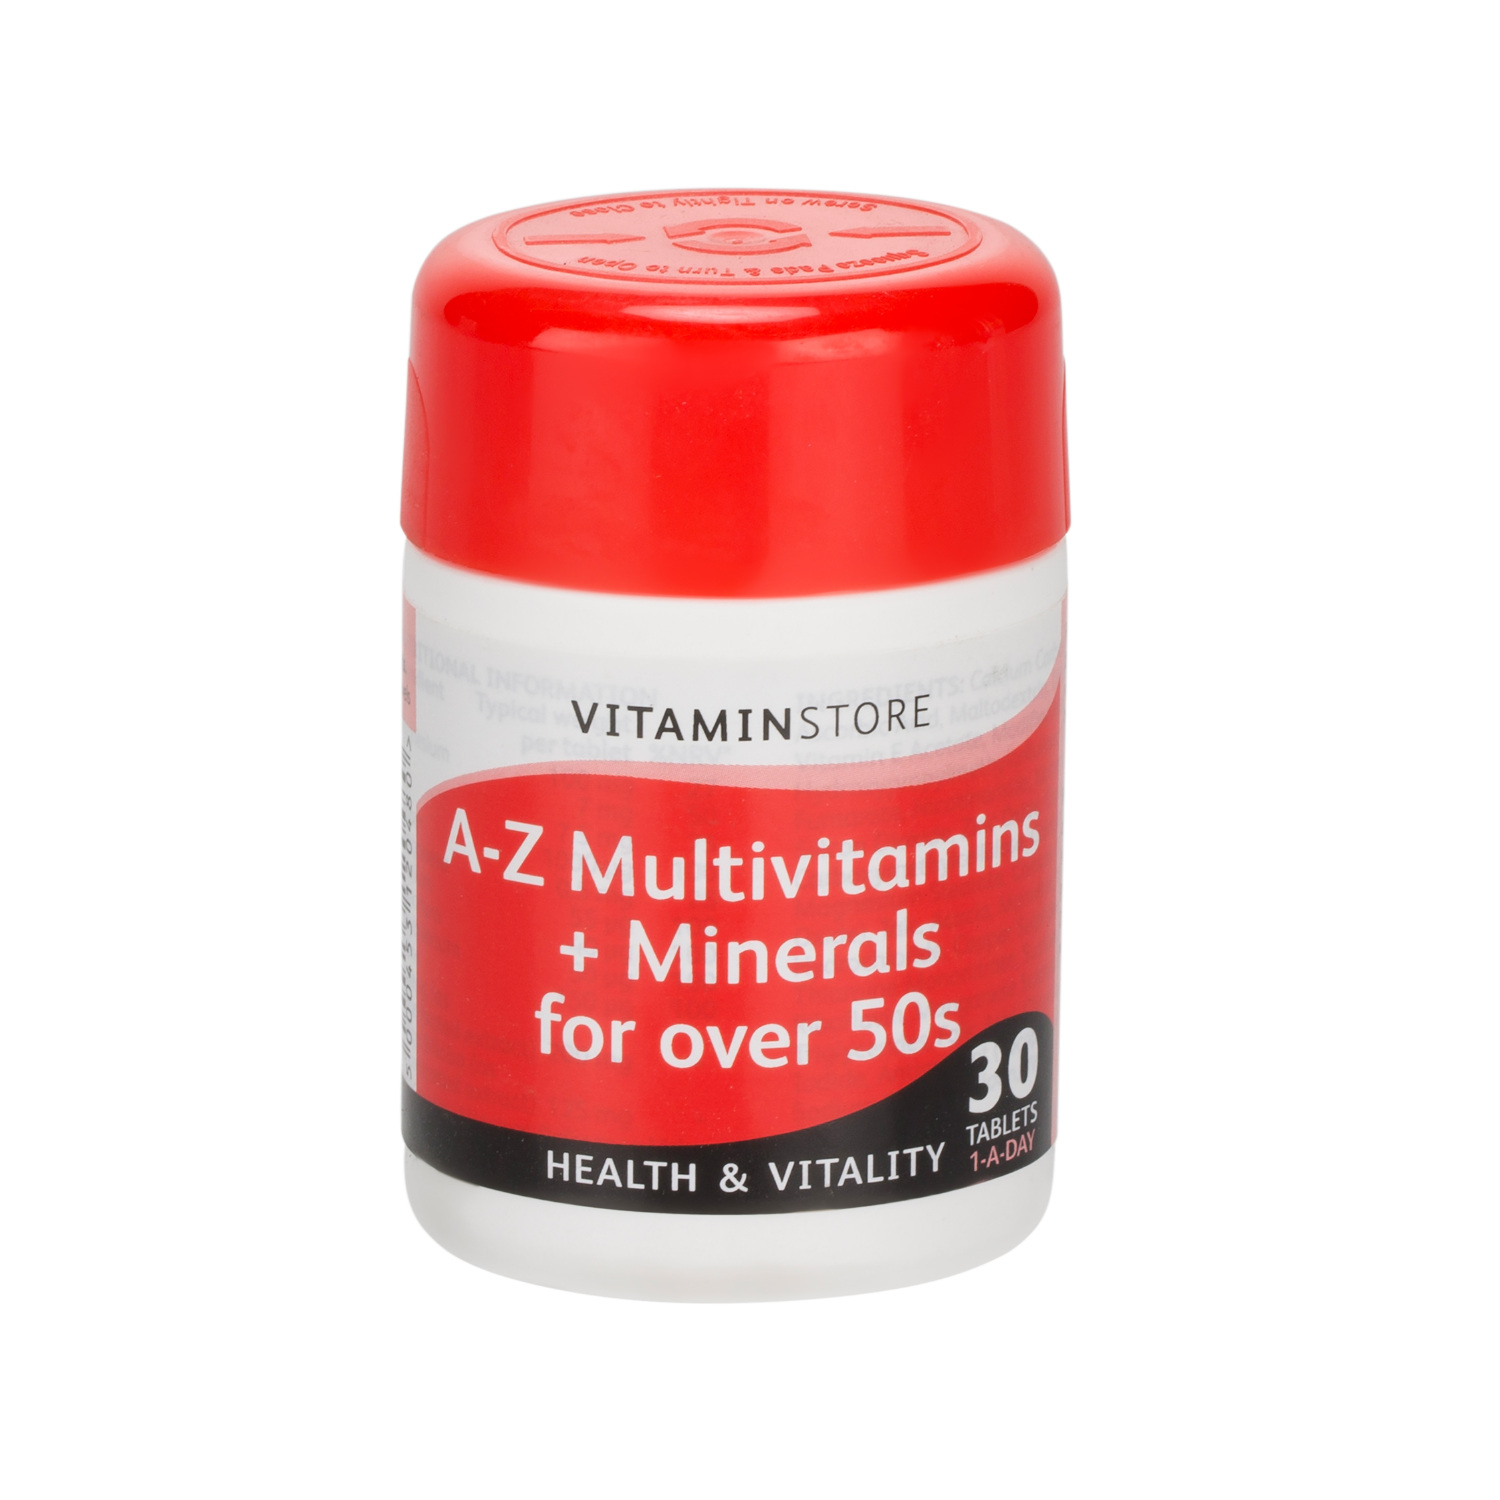 Over 50 A-Z Multi Vitamins & Minerals Image